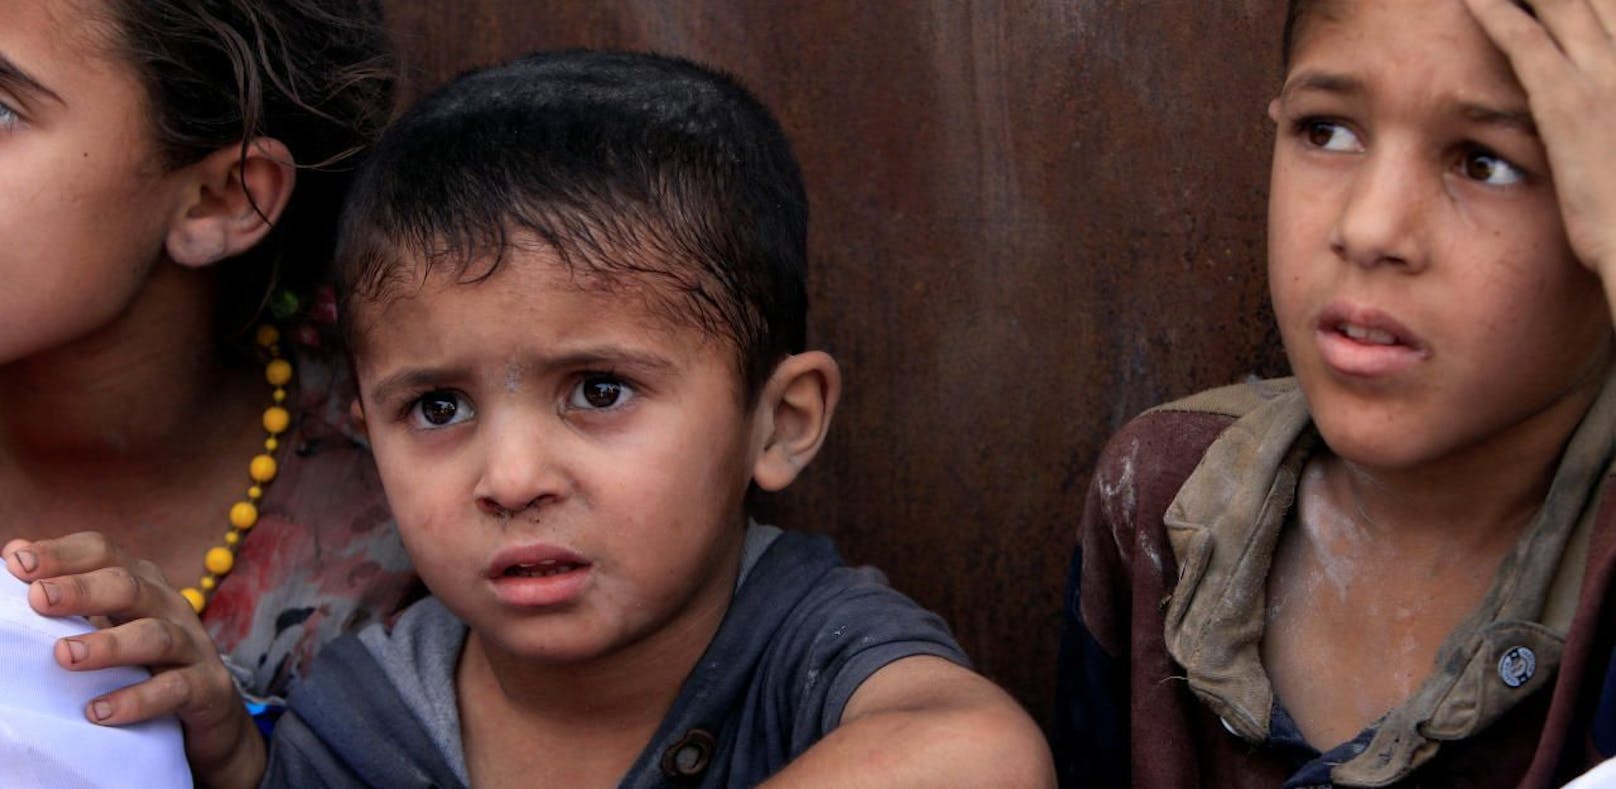 UNO-Generalsekretär Antonio Guterres bezeichnete Attacken auf Kinder als &quot;inakzeptabel&quot;.